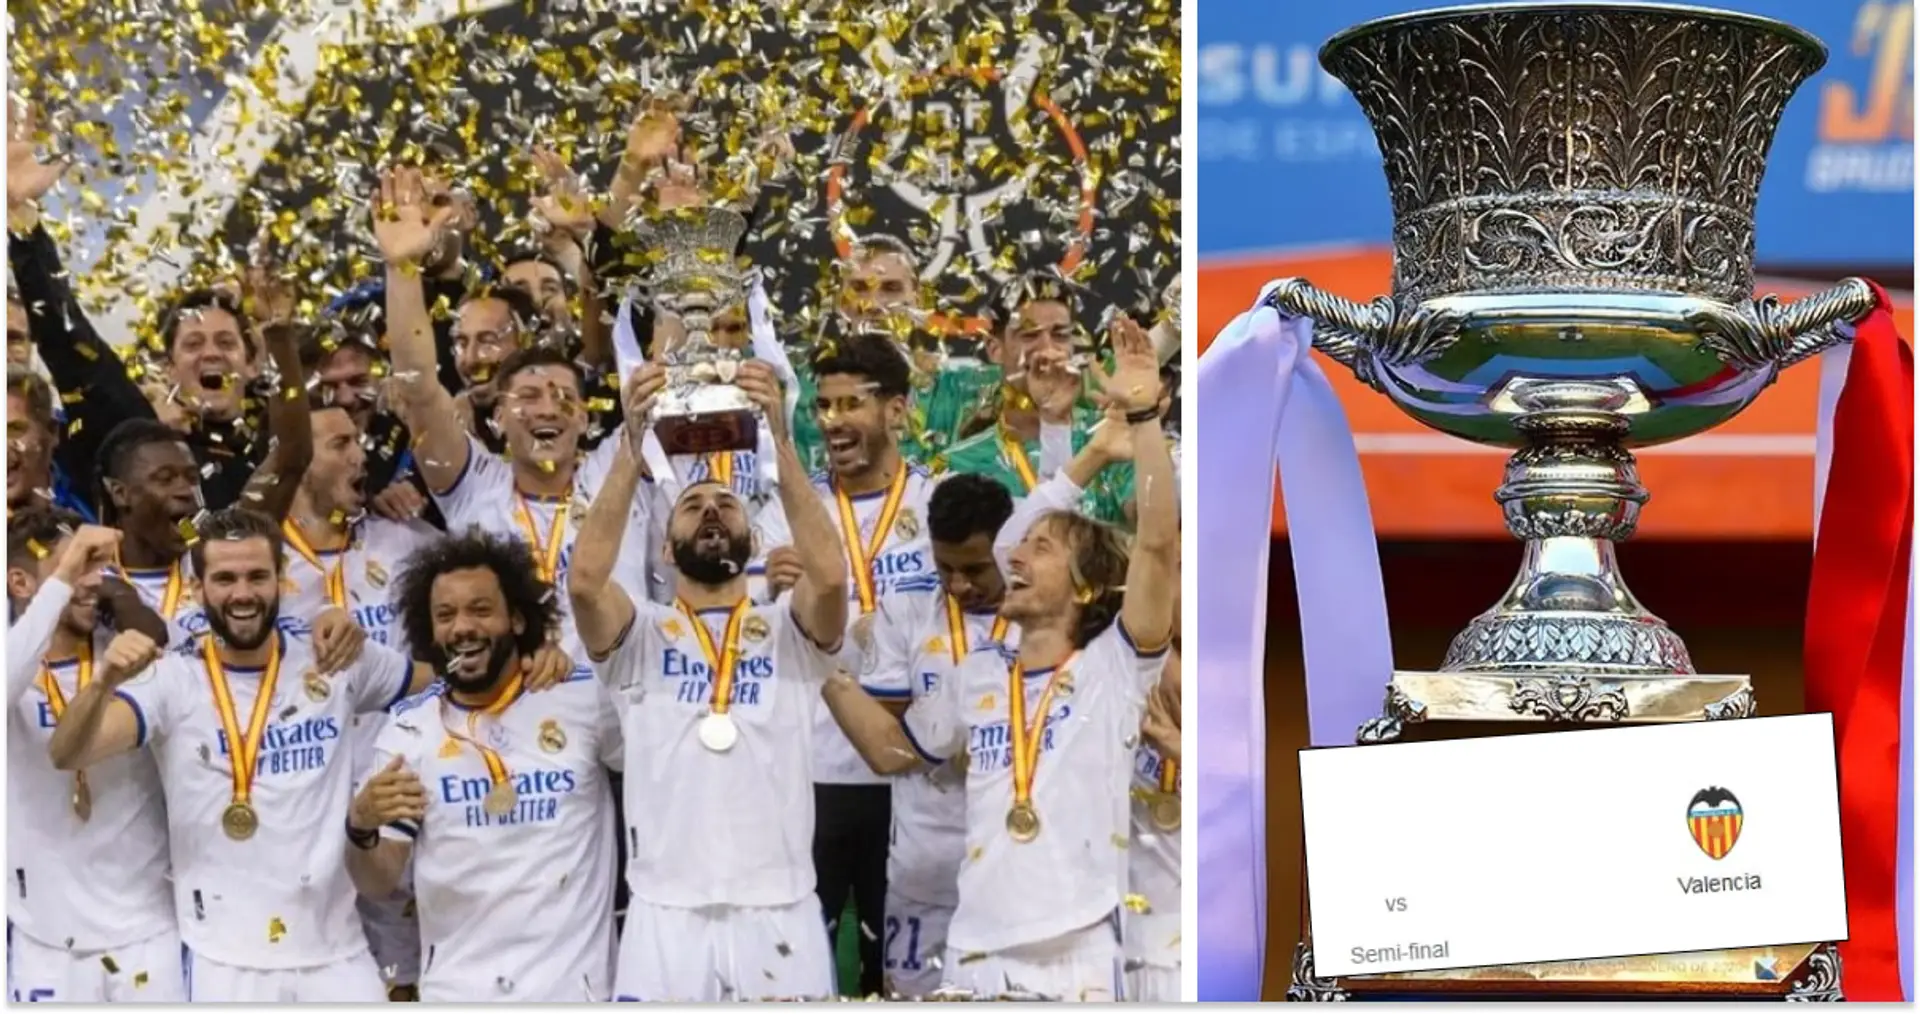 Fechas, rivales: Todo lo que necesitas saber sobre la Supercopa de España 2023